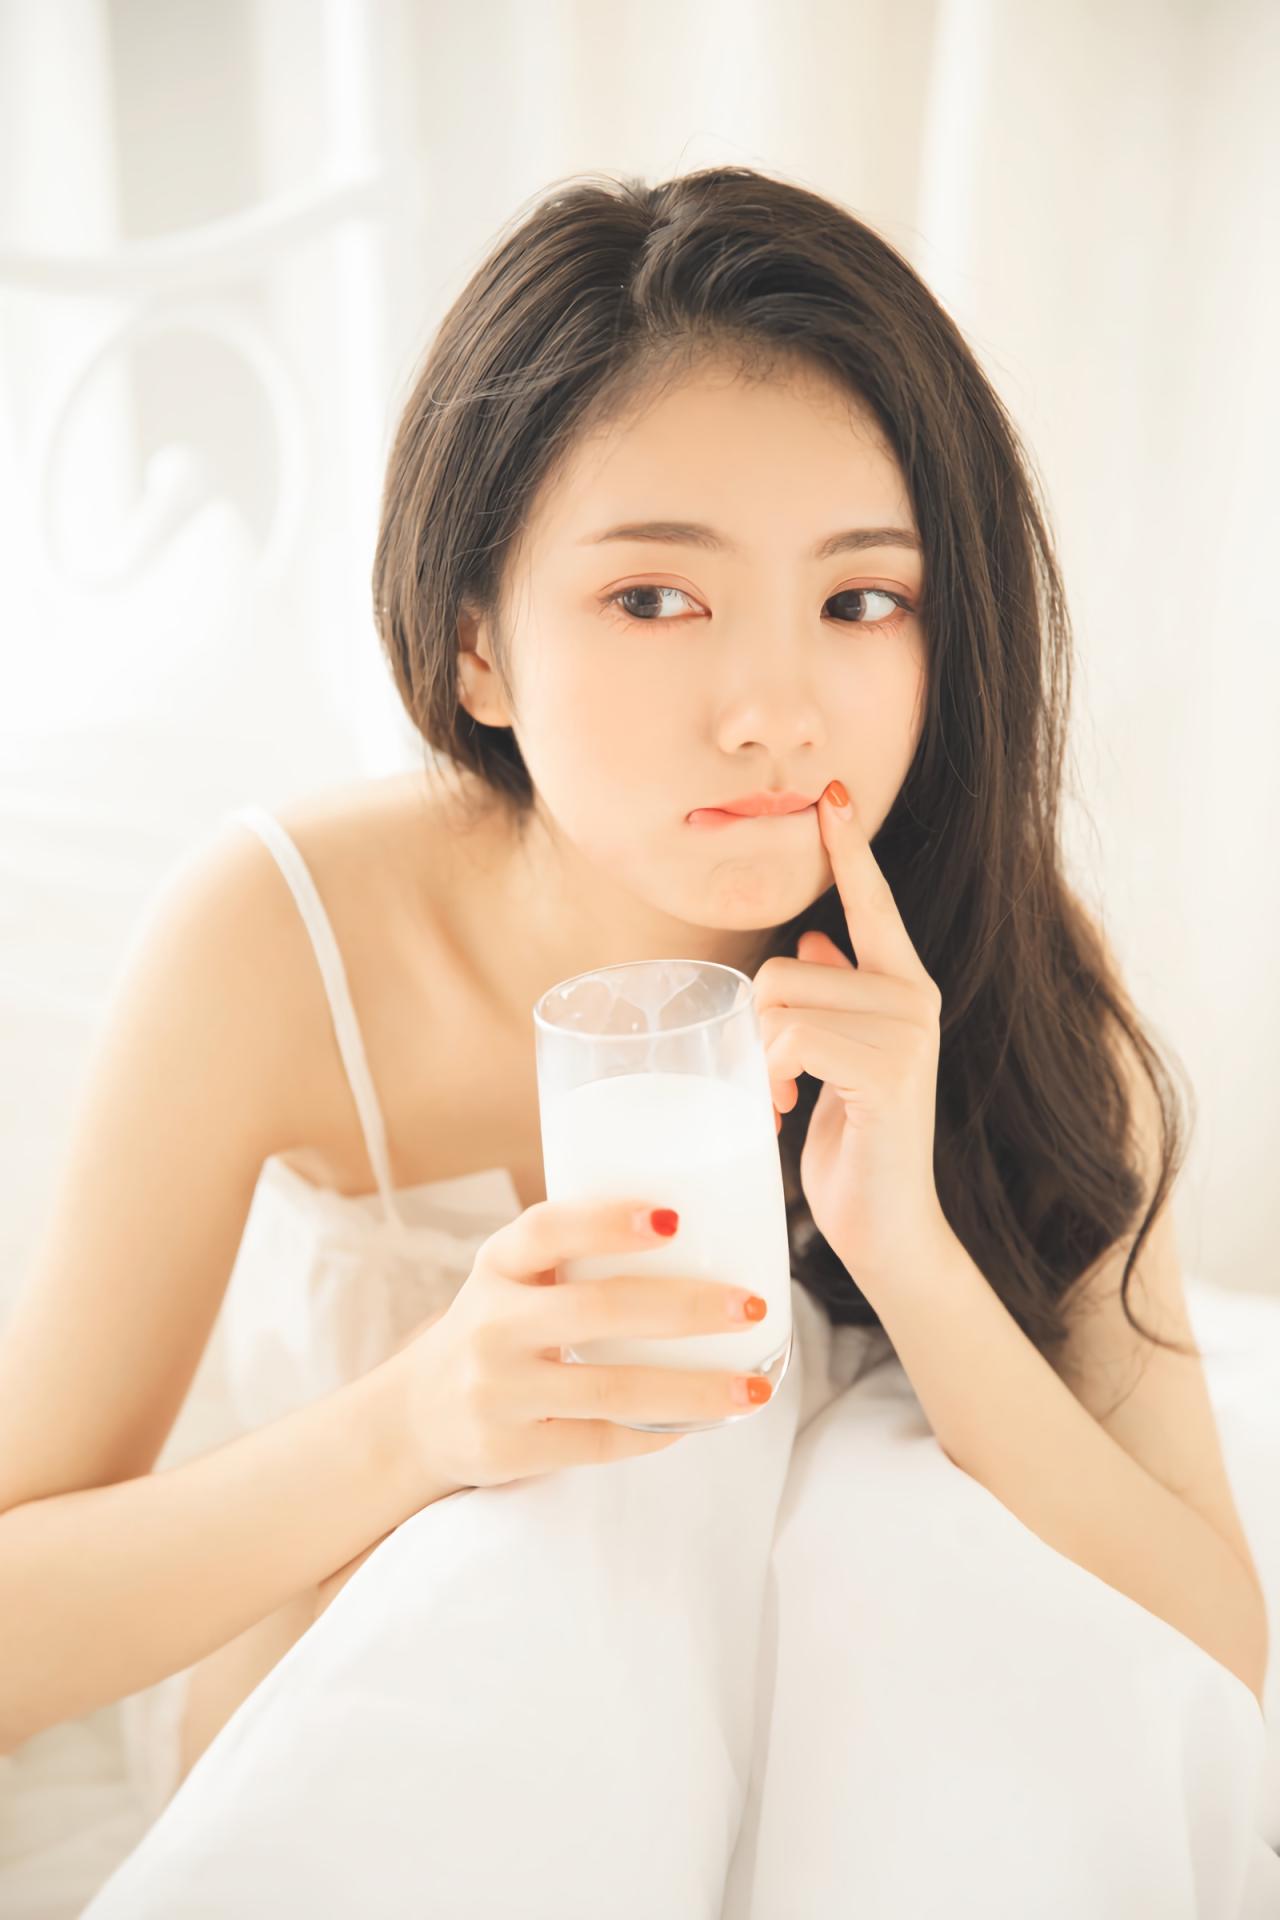 少女坐在床上，右手握着牛奶杯，作手食指抵着唇角